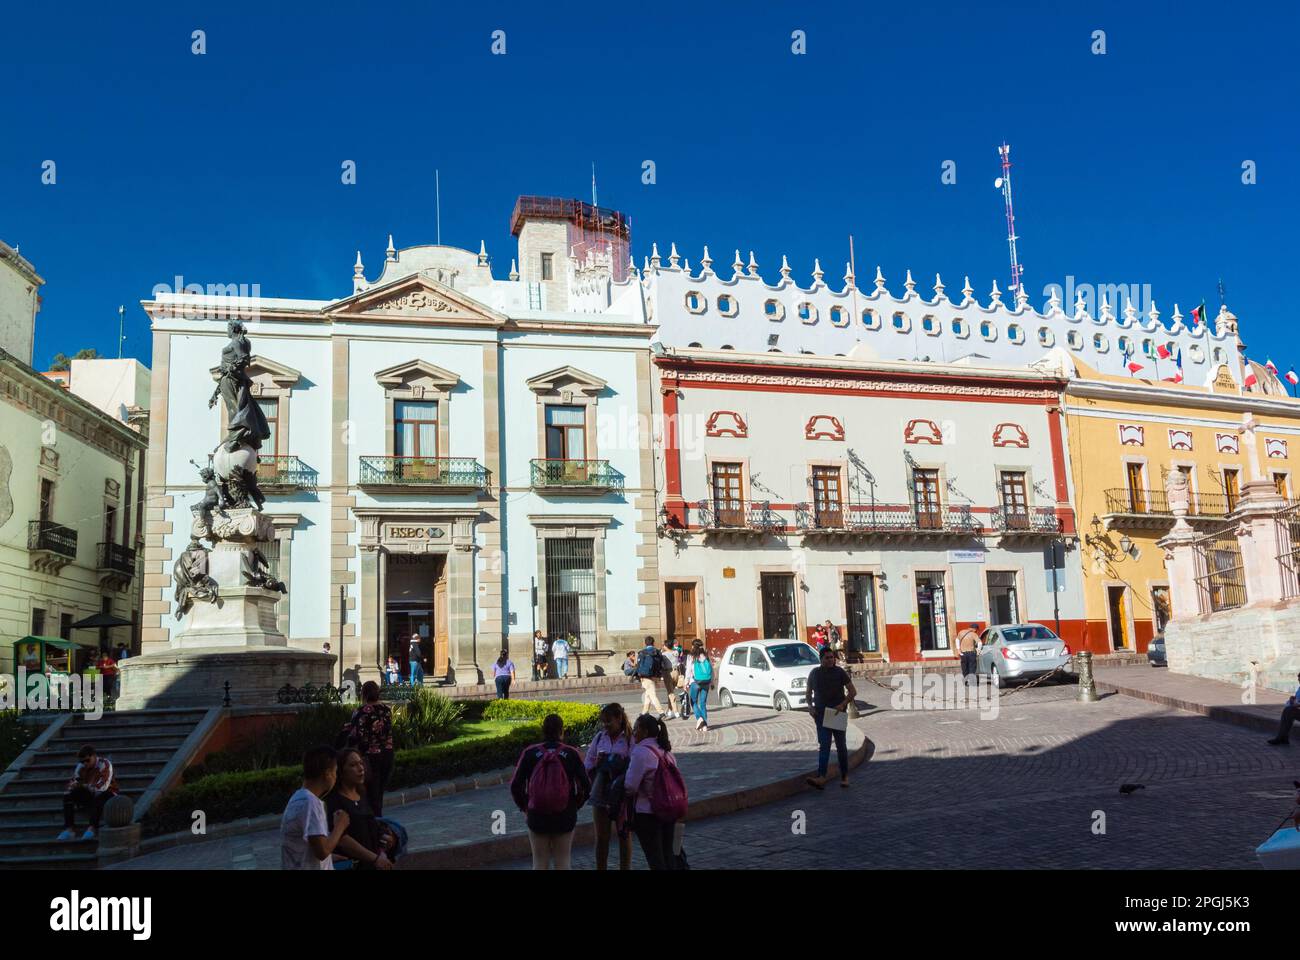 Guanajuato, Guanajuato, Mexico, Plaza de la paz with colorful architecture that is the centre of historical city of Guanajuato Stock Photo